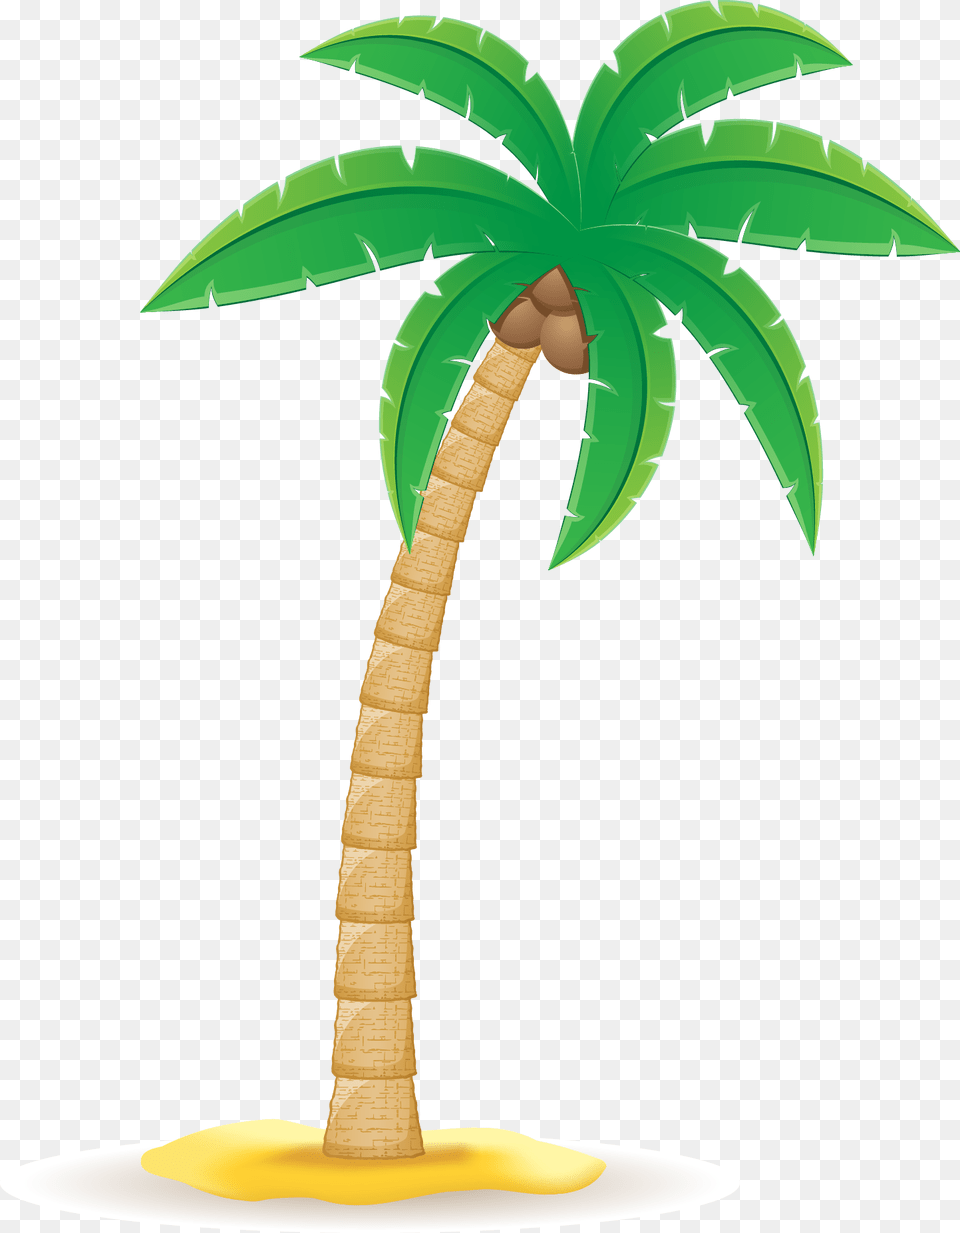 Coconut Arecaceae Clip Art Clip Art Coconut Tree, Palm Tree, Plant, Food, Fruit Png Image